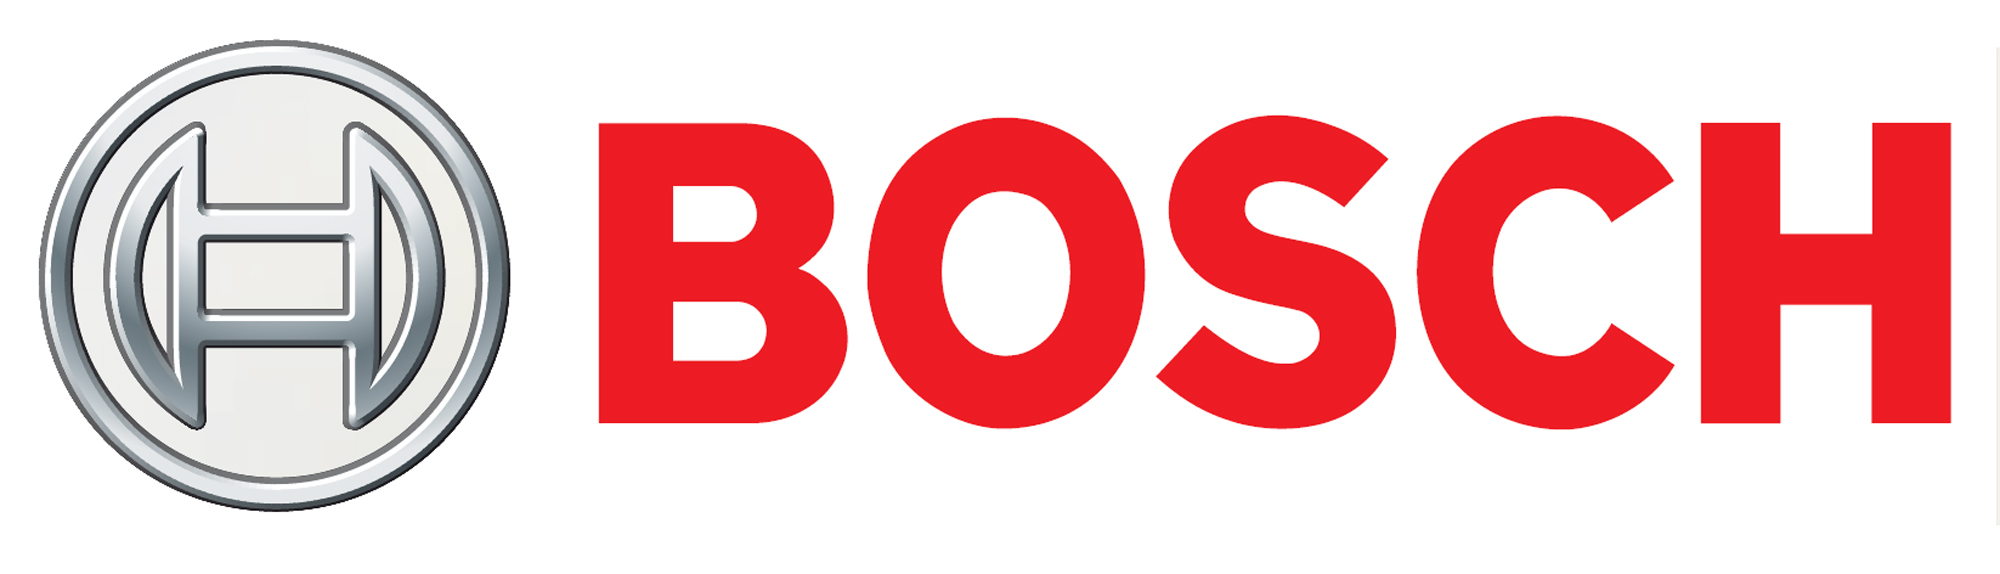 bosch-logo1